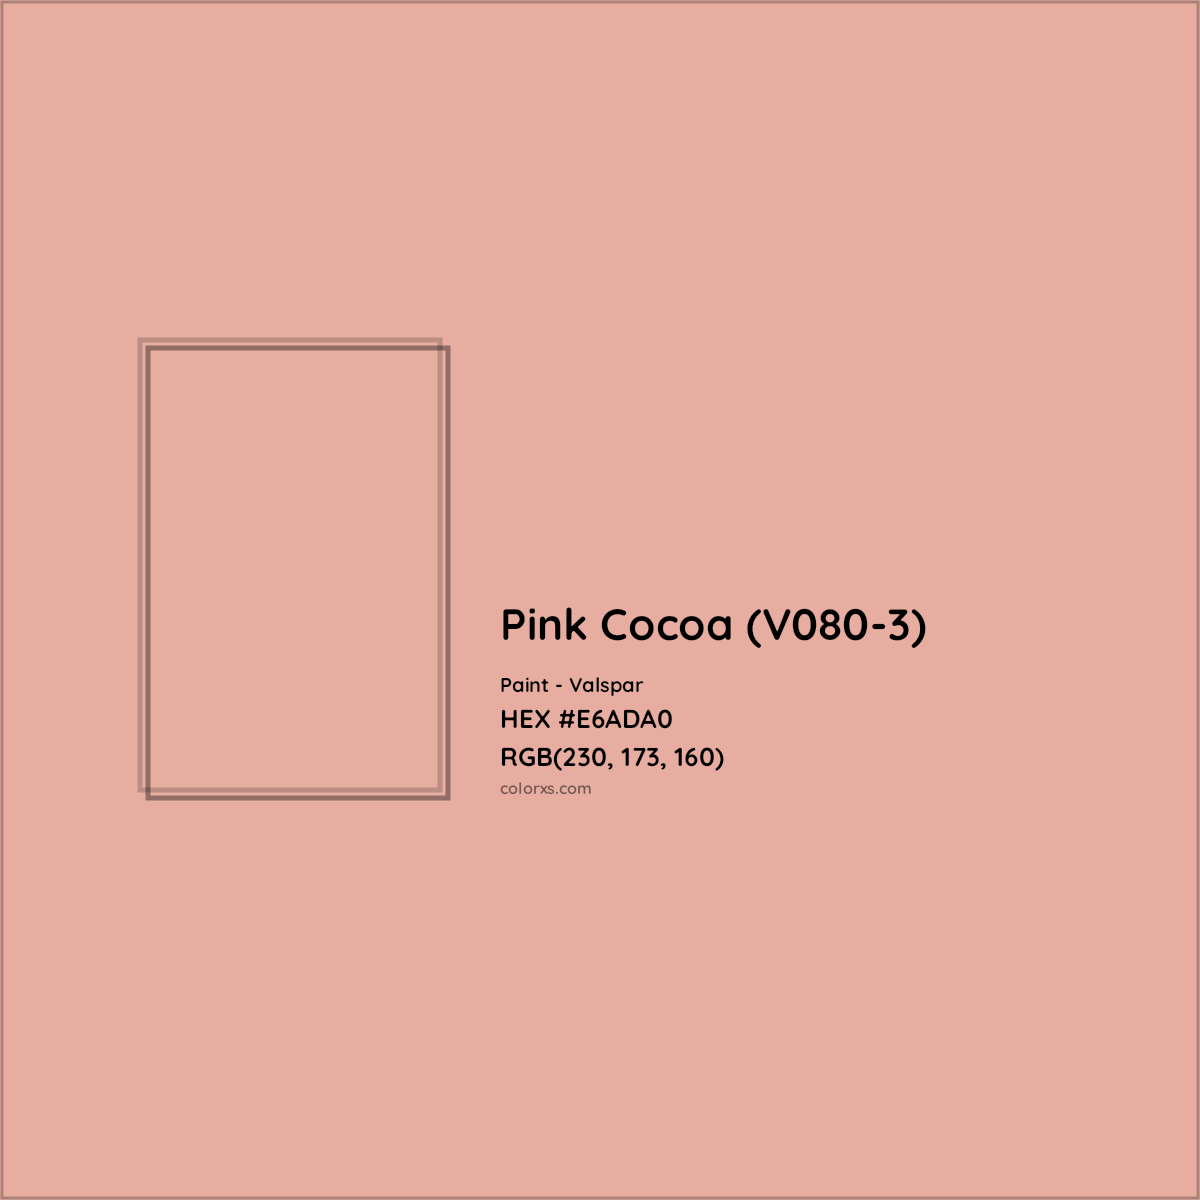 HEX #E6ADA0 Pink Cocoa (V080-3) Paint Valspar - Color Code